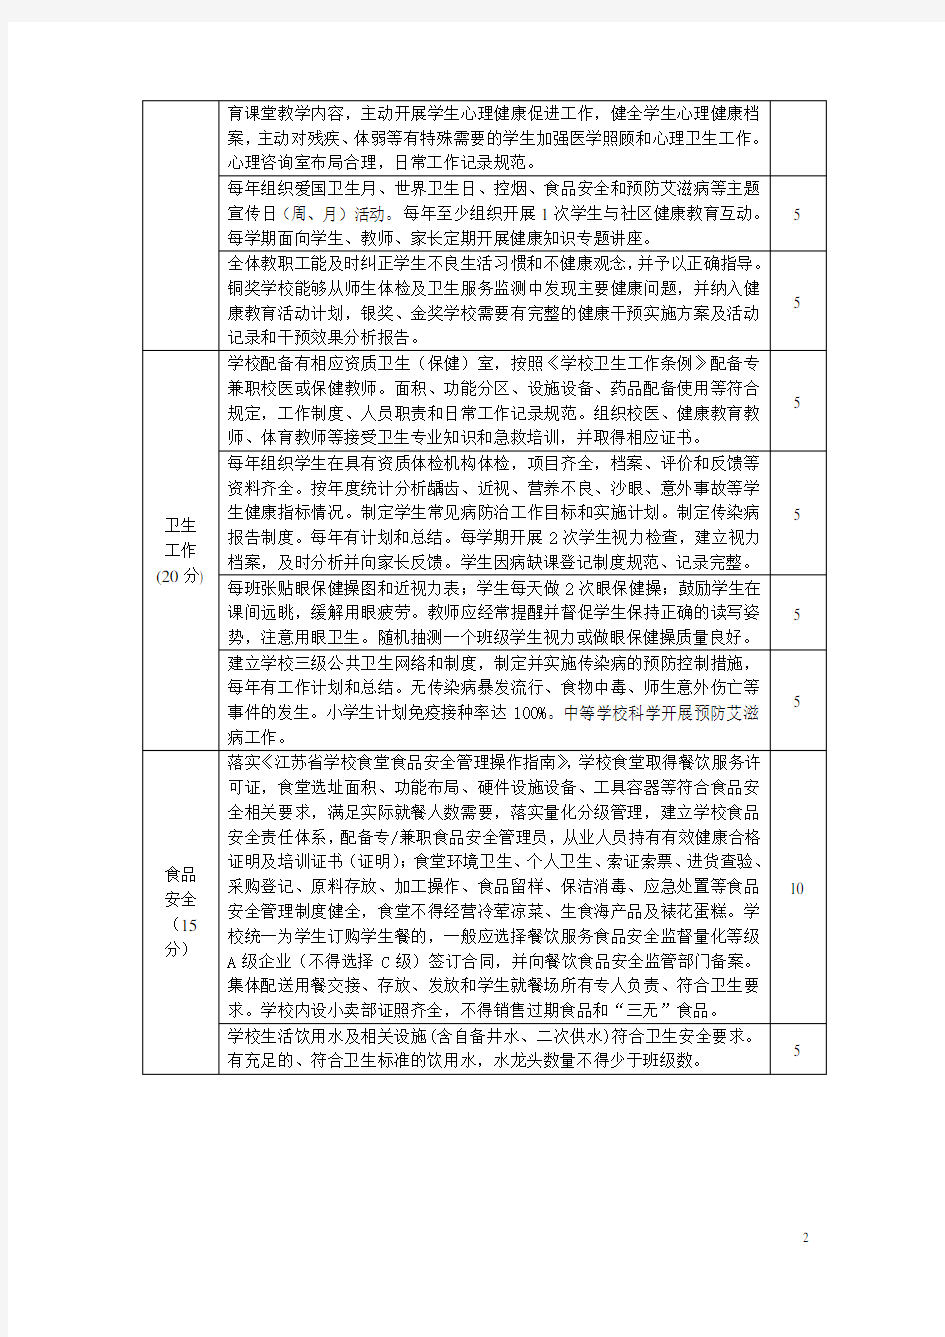 江苏省中小学健康促进学校创建标准(2015版)